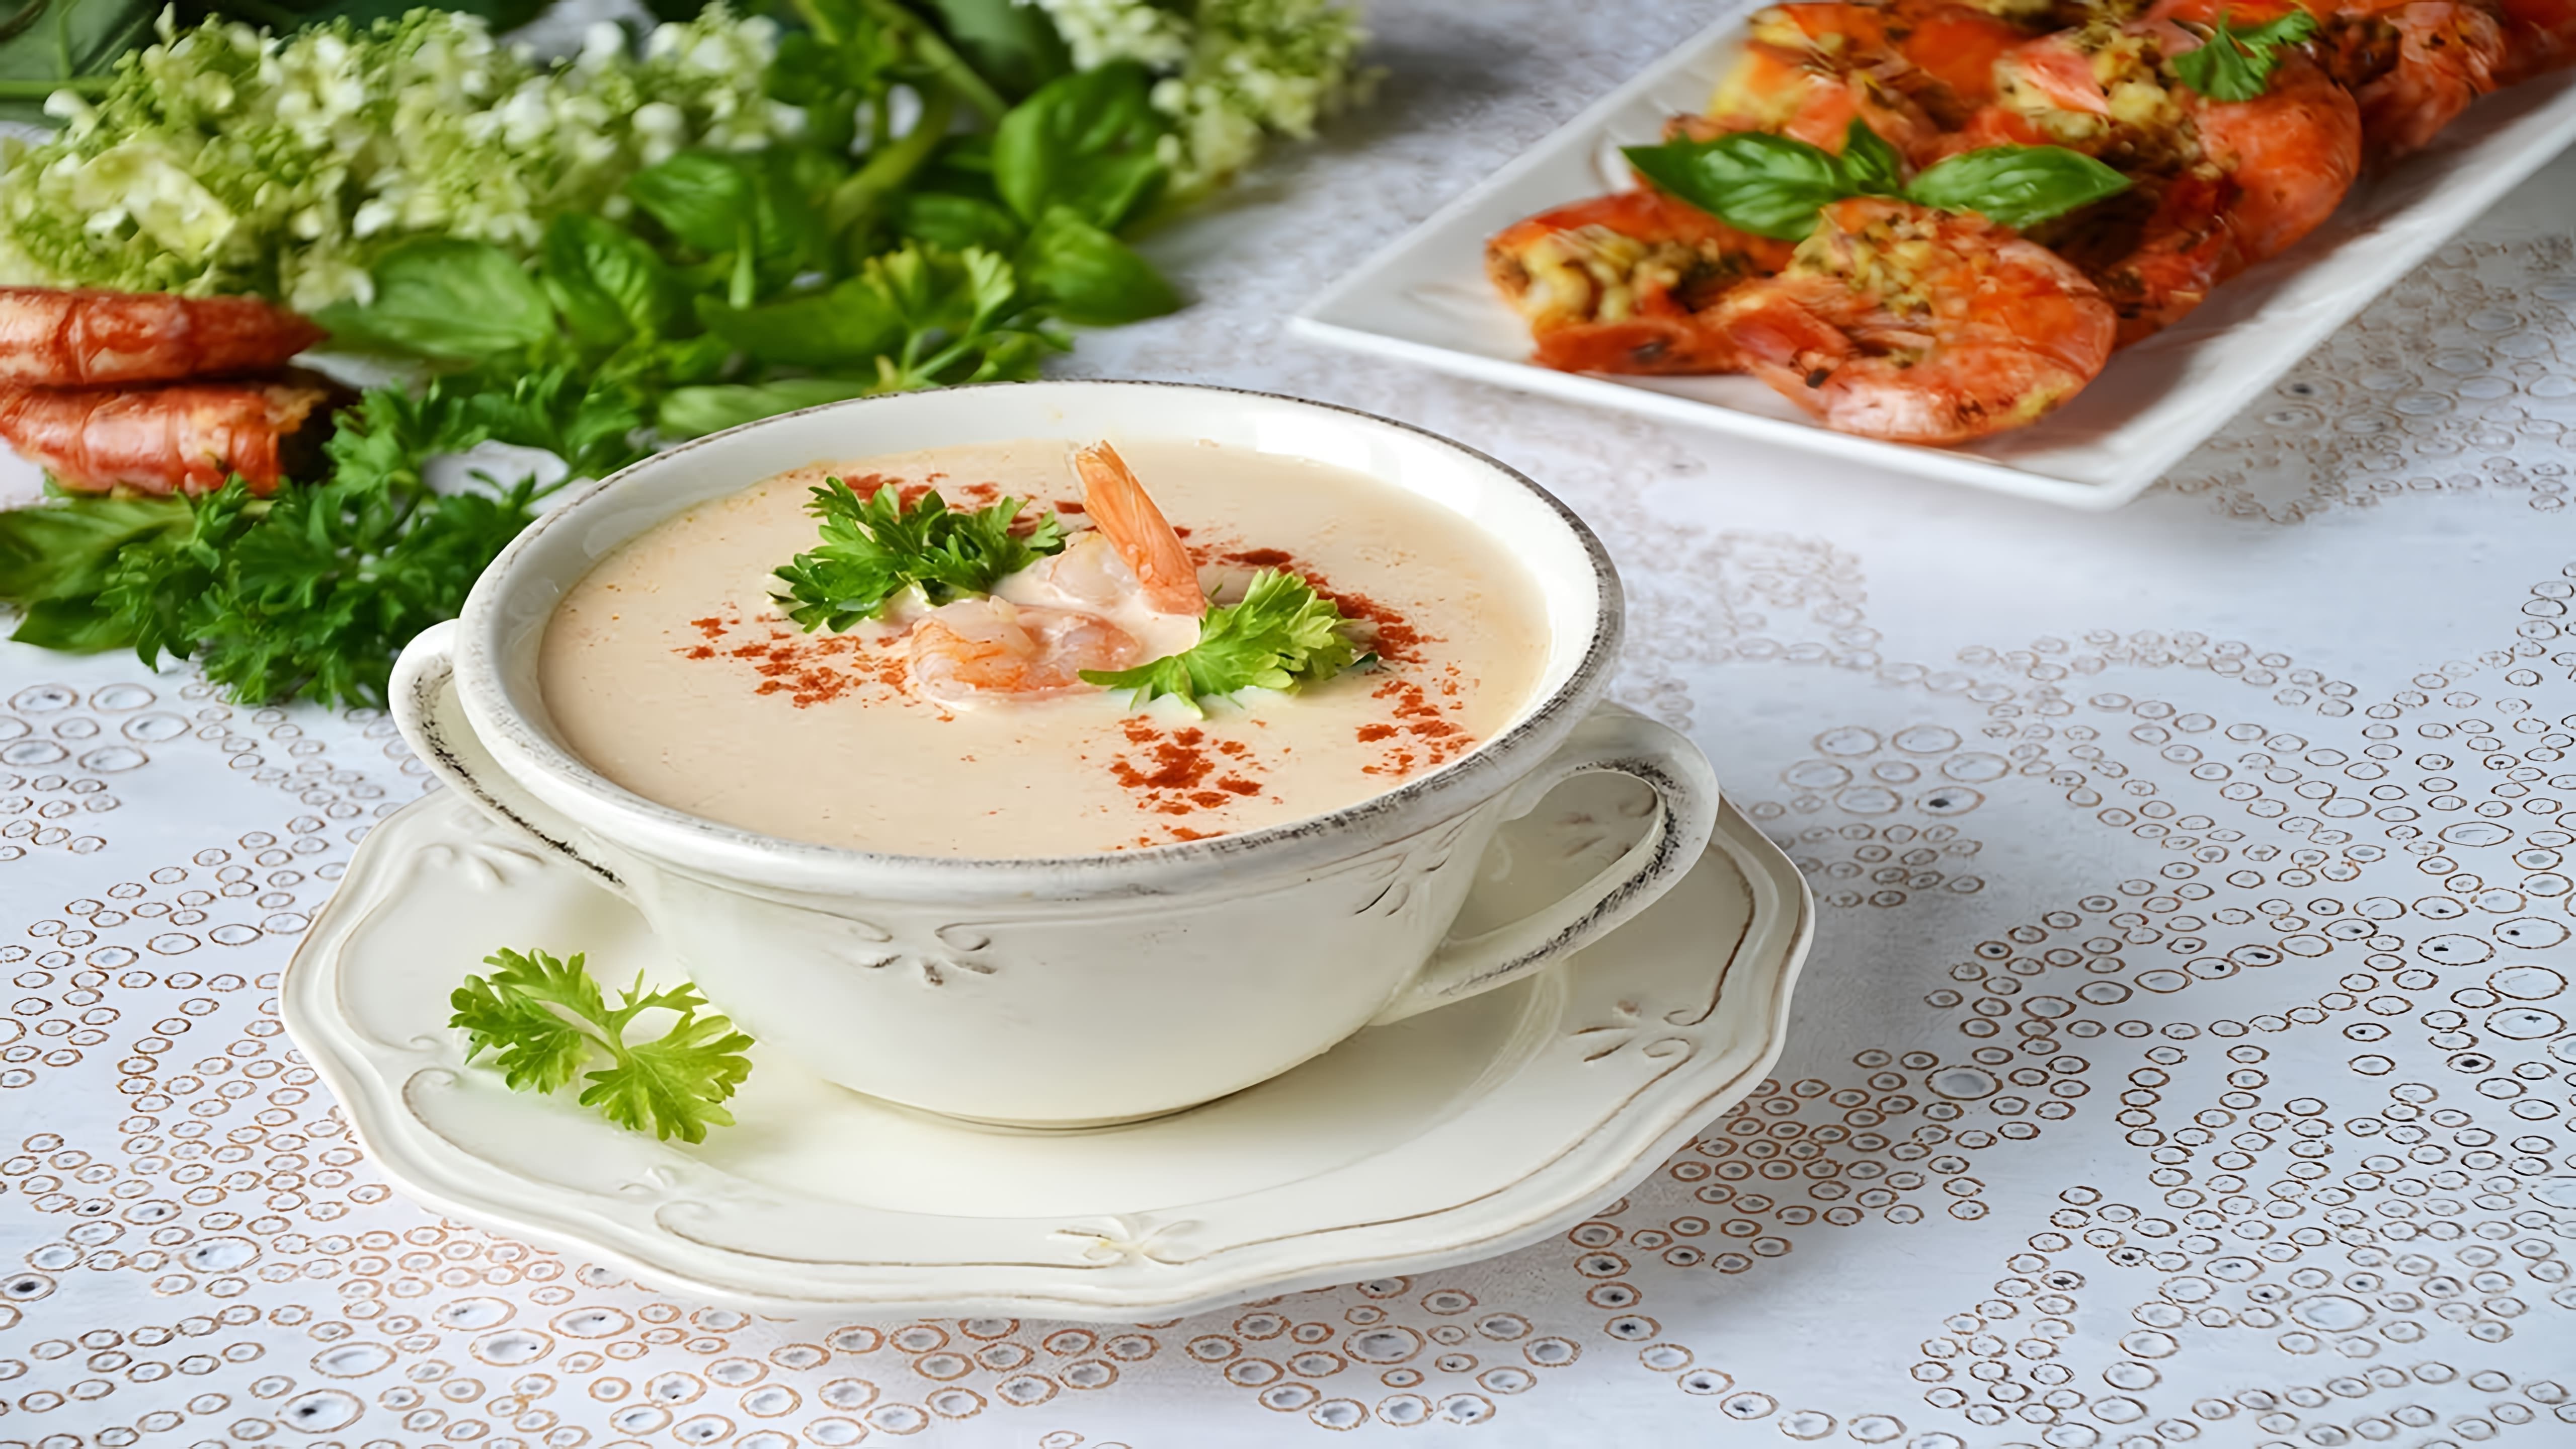 Крем-суп с креветками - это вкусное и питательное блюдо, которое можно приготовить в домашних условиях